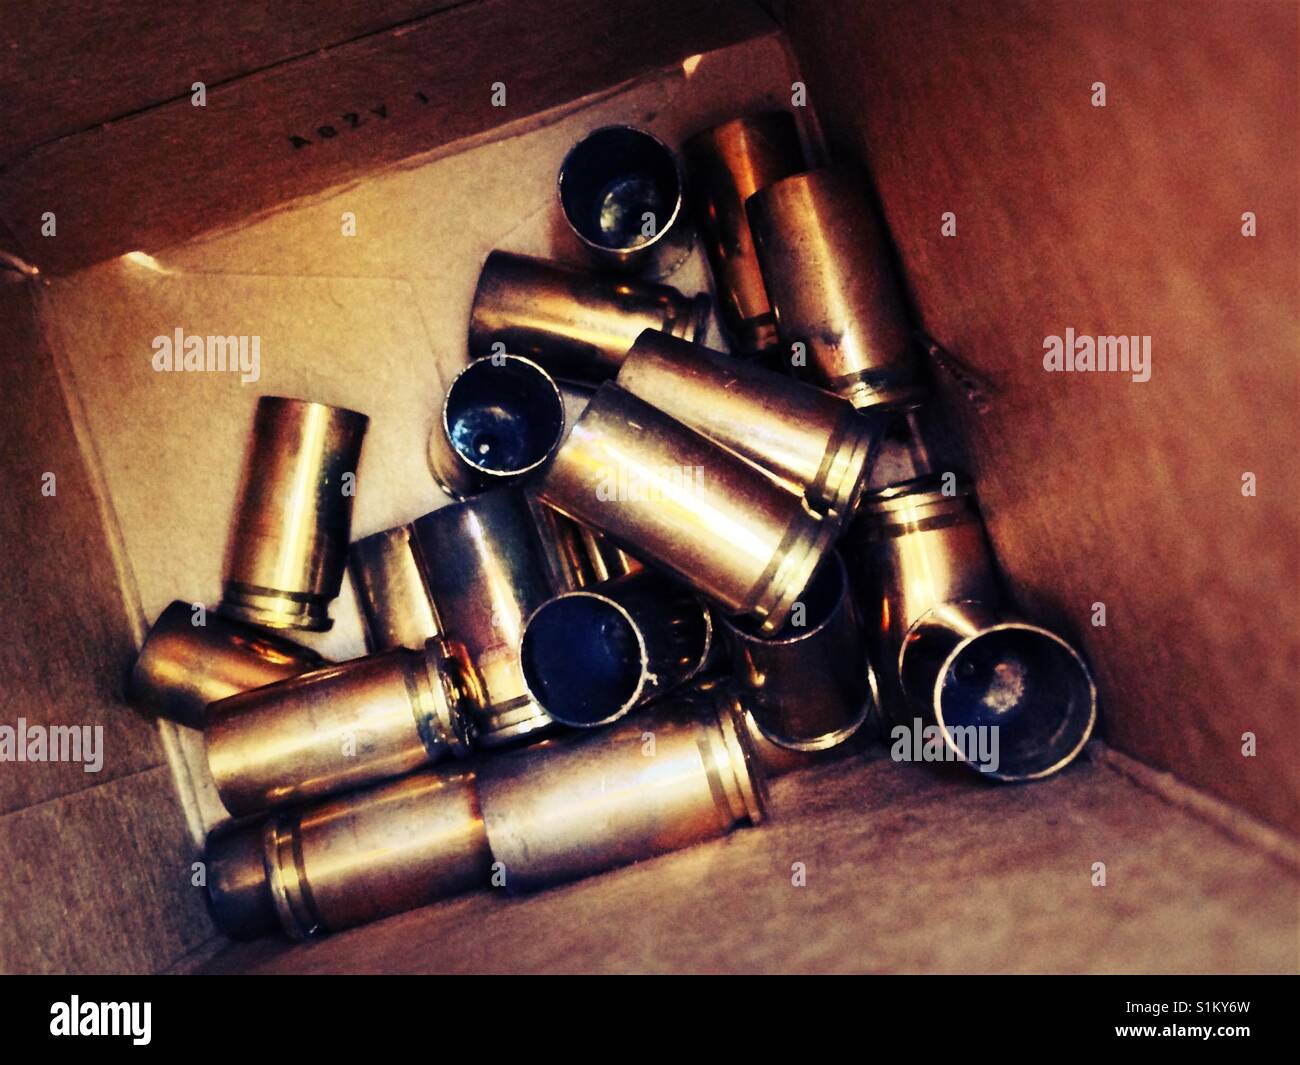 Spent brass ammunition cases Stock Photo - Alamy